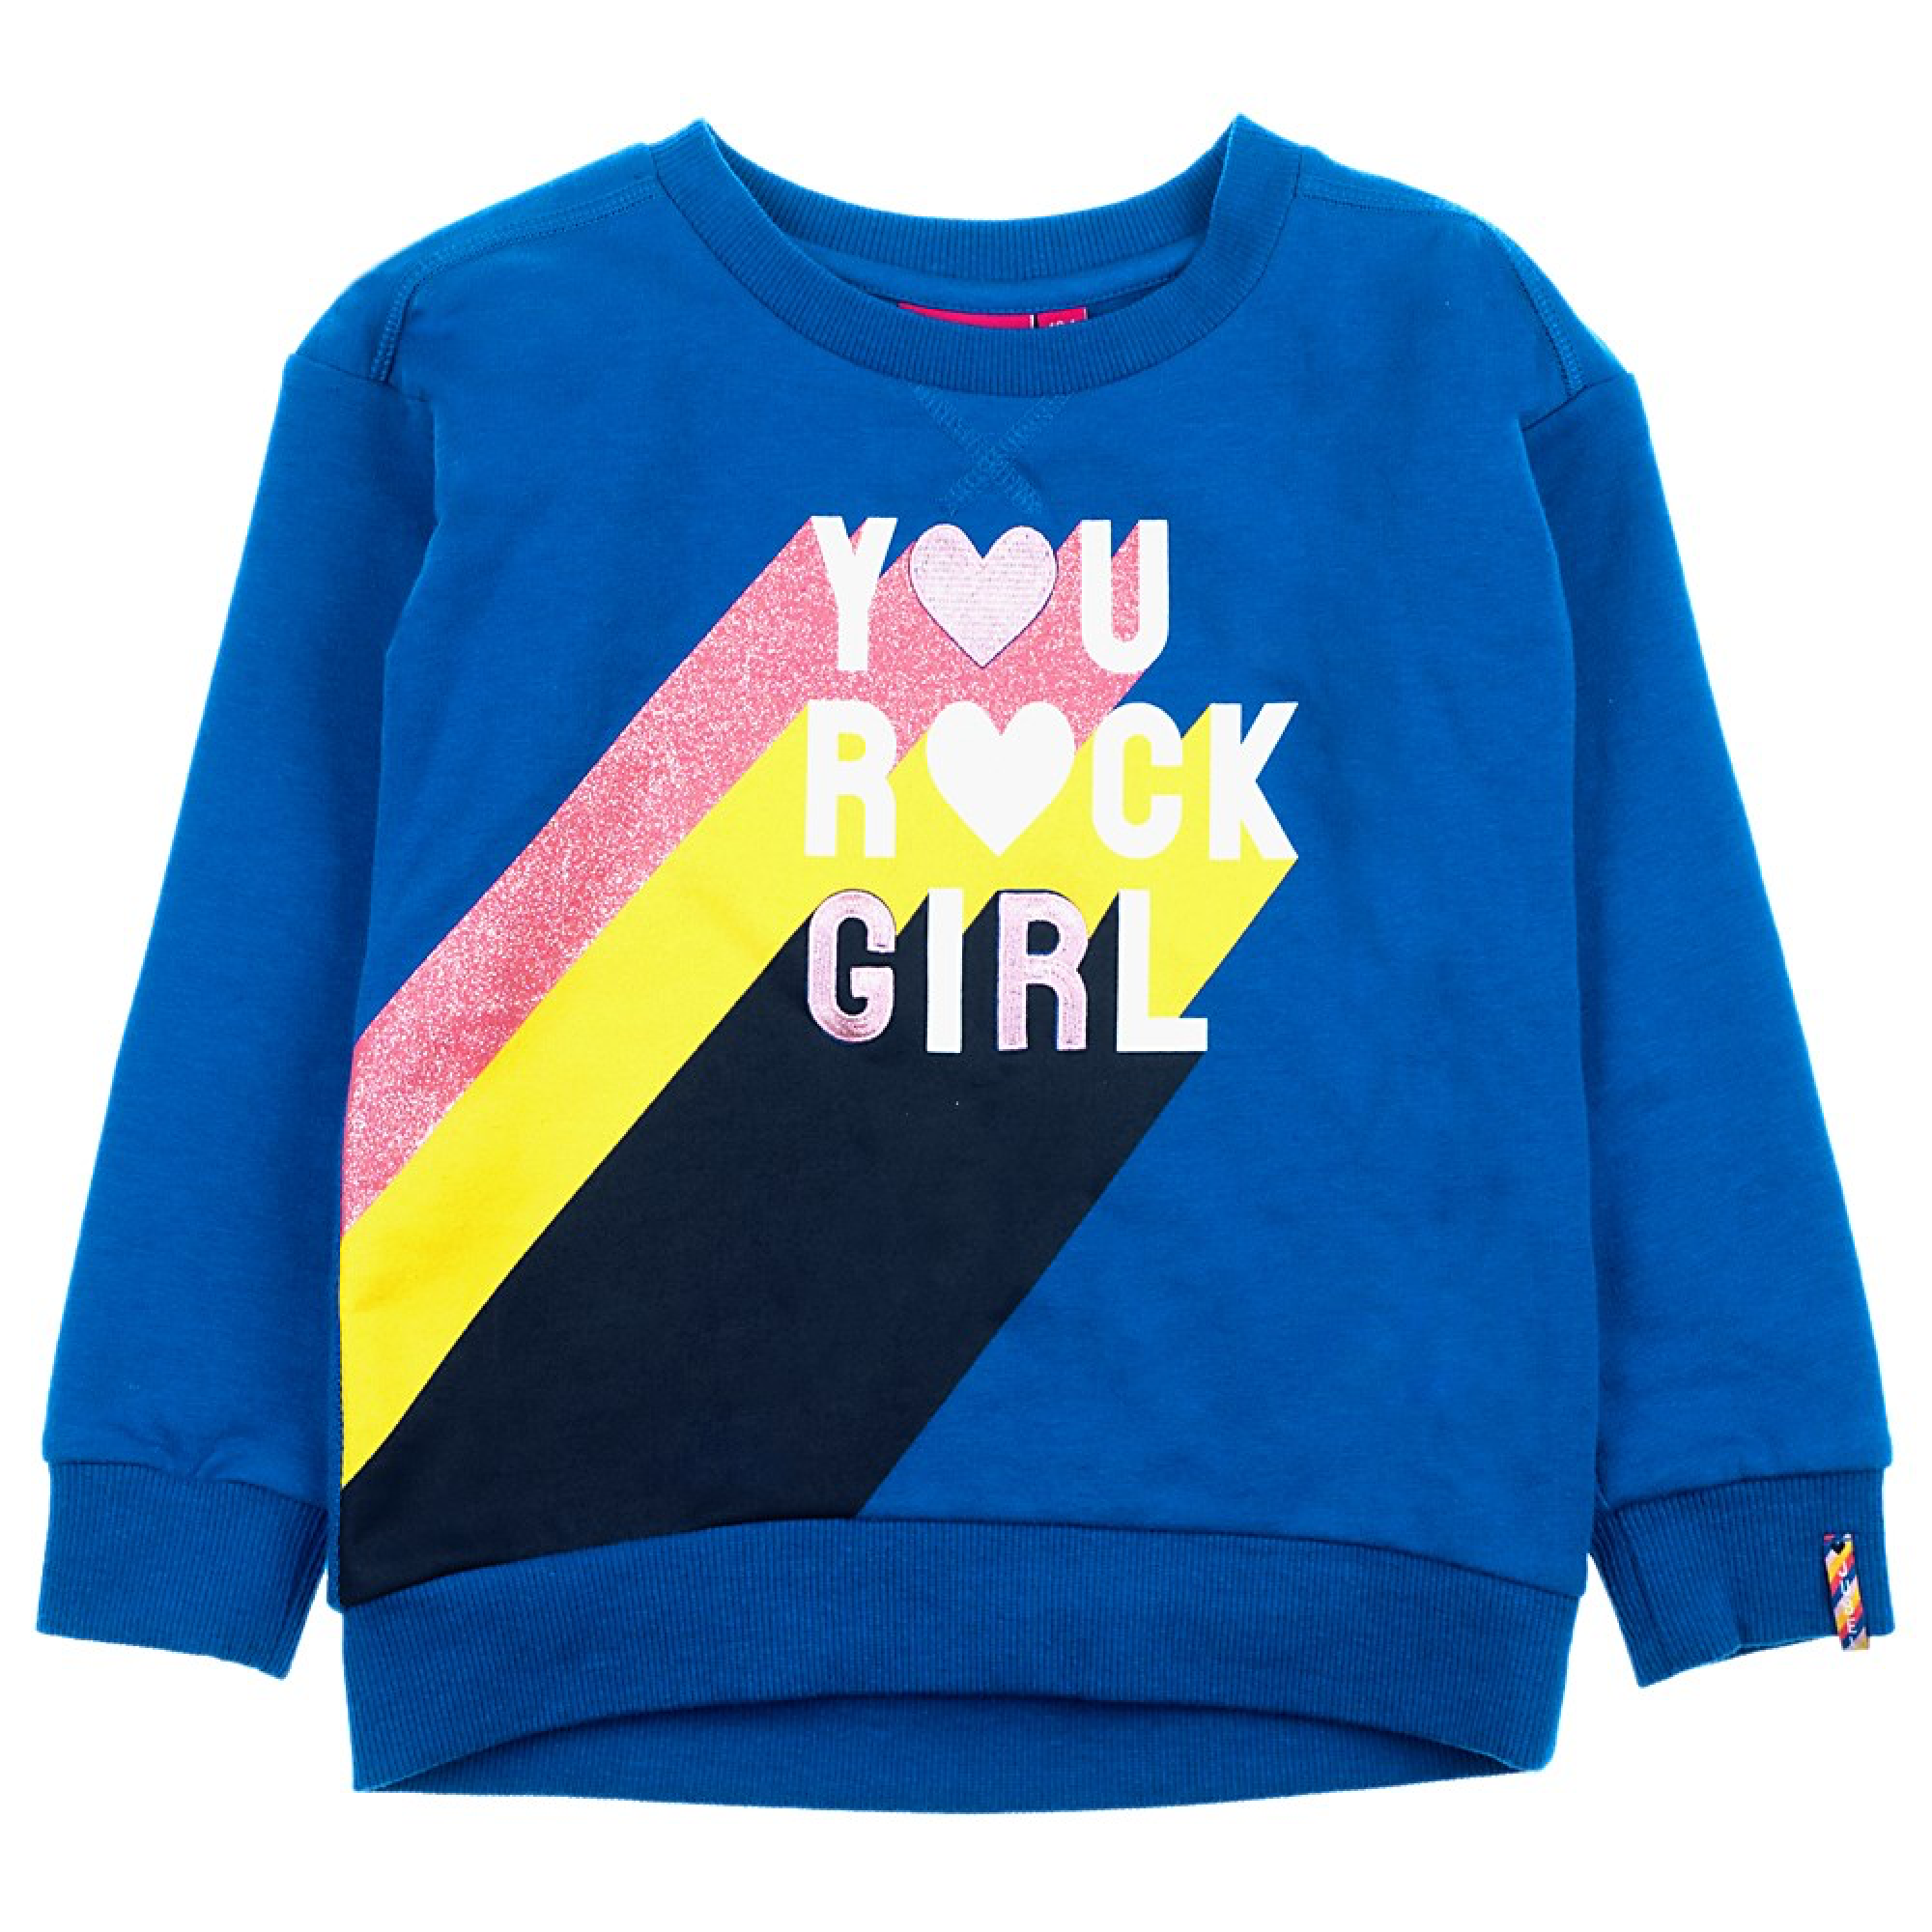 Meisjes Sweater You Rock - Pret-A-Party van Jubel in de kleur Blauw in maat 140.